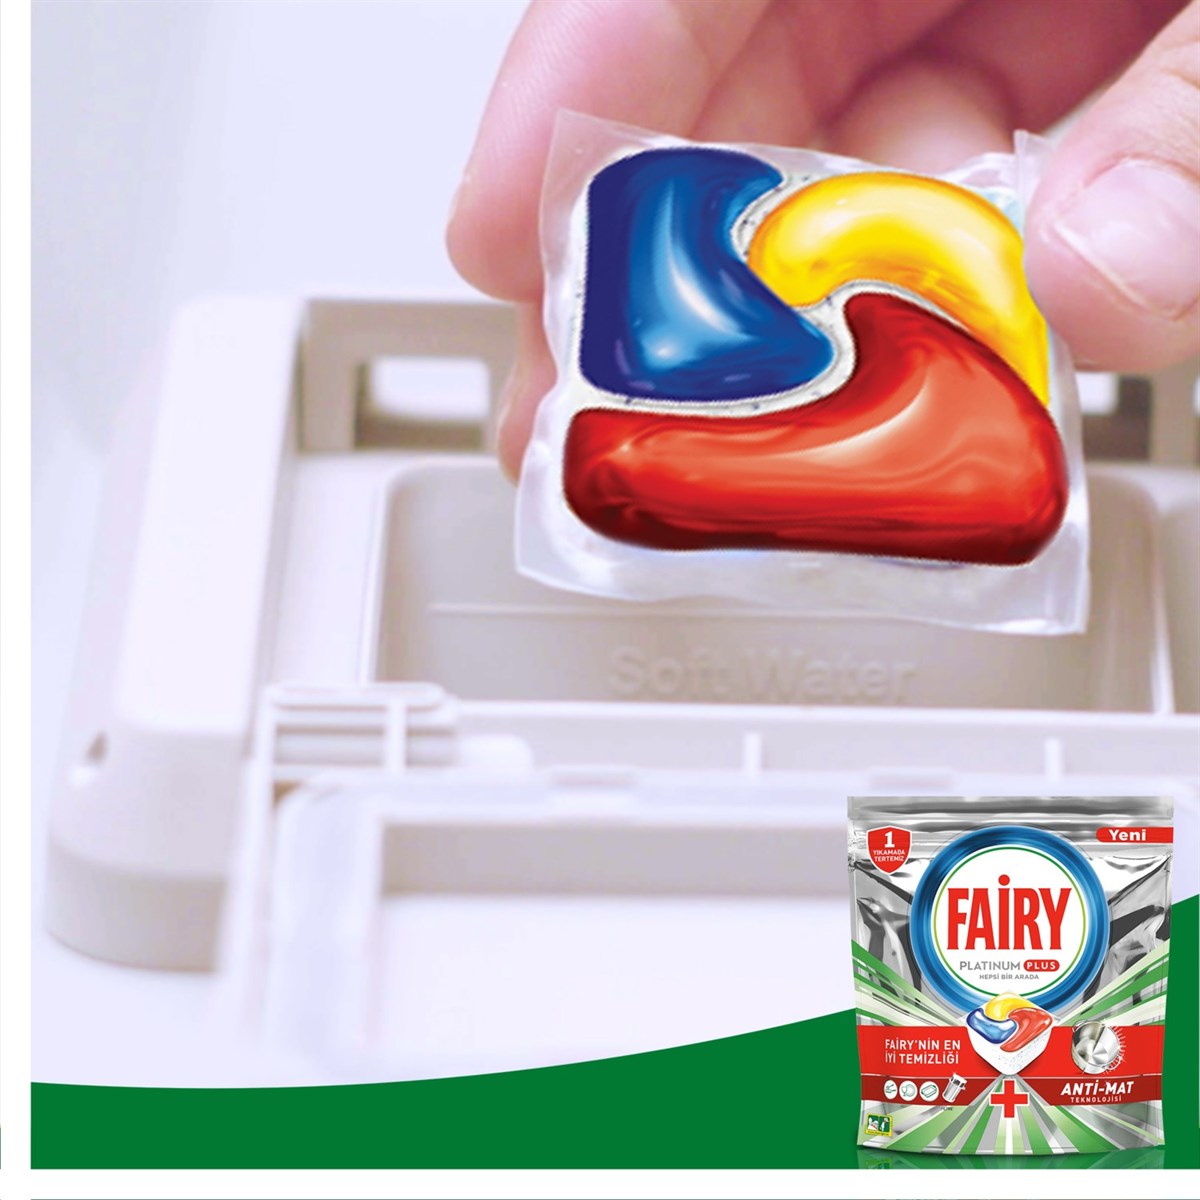 Fairy Platinum Plus 60 Yıkama Bulaşık Makinesi Deterjanı Kapsülü